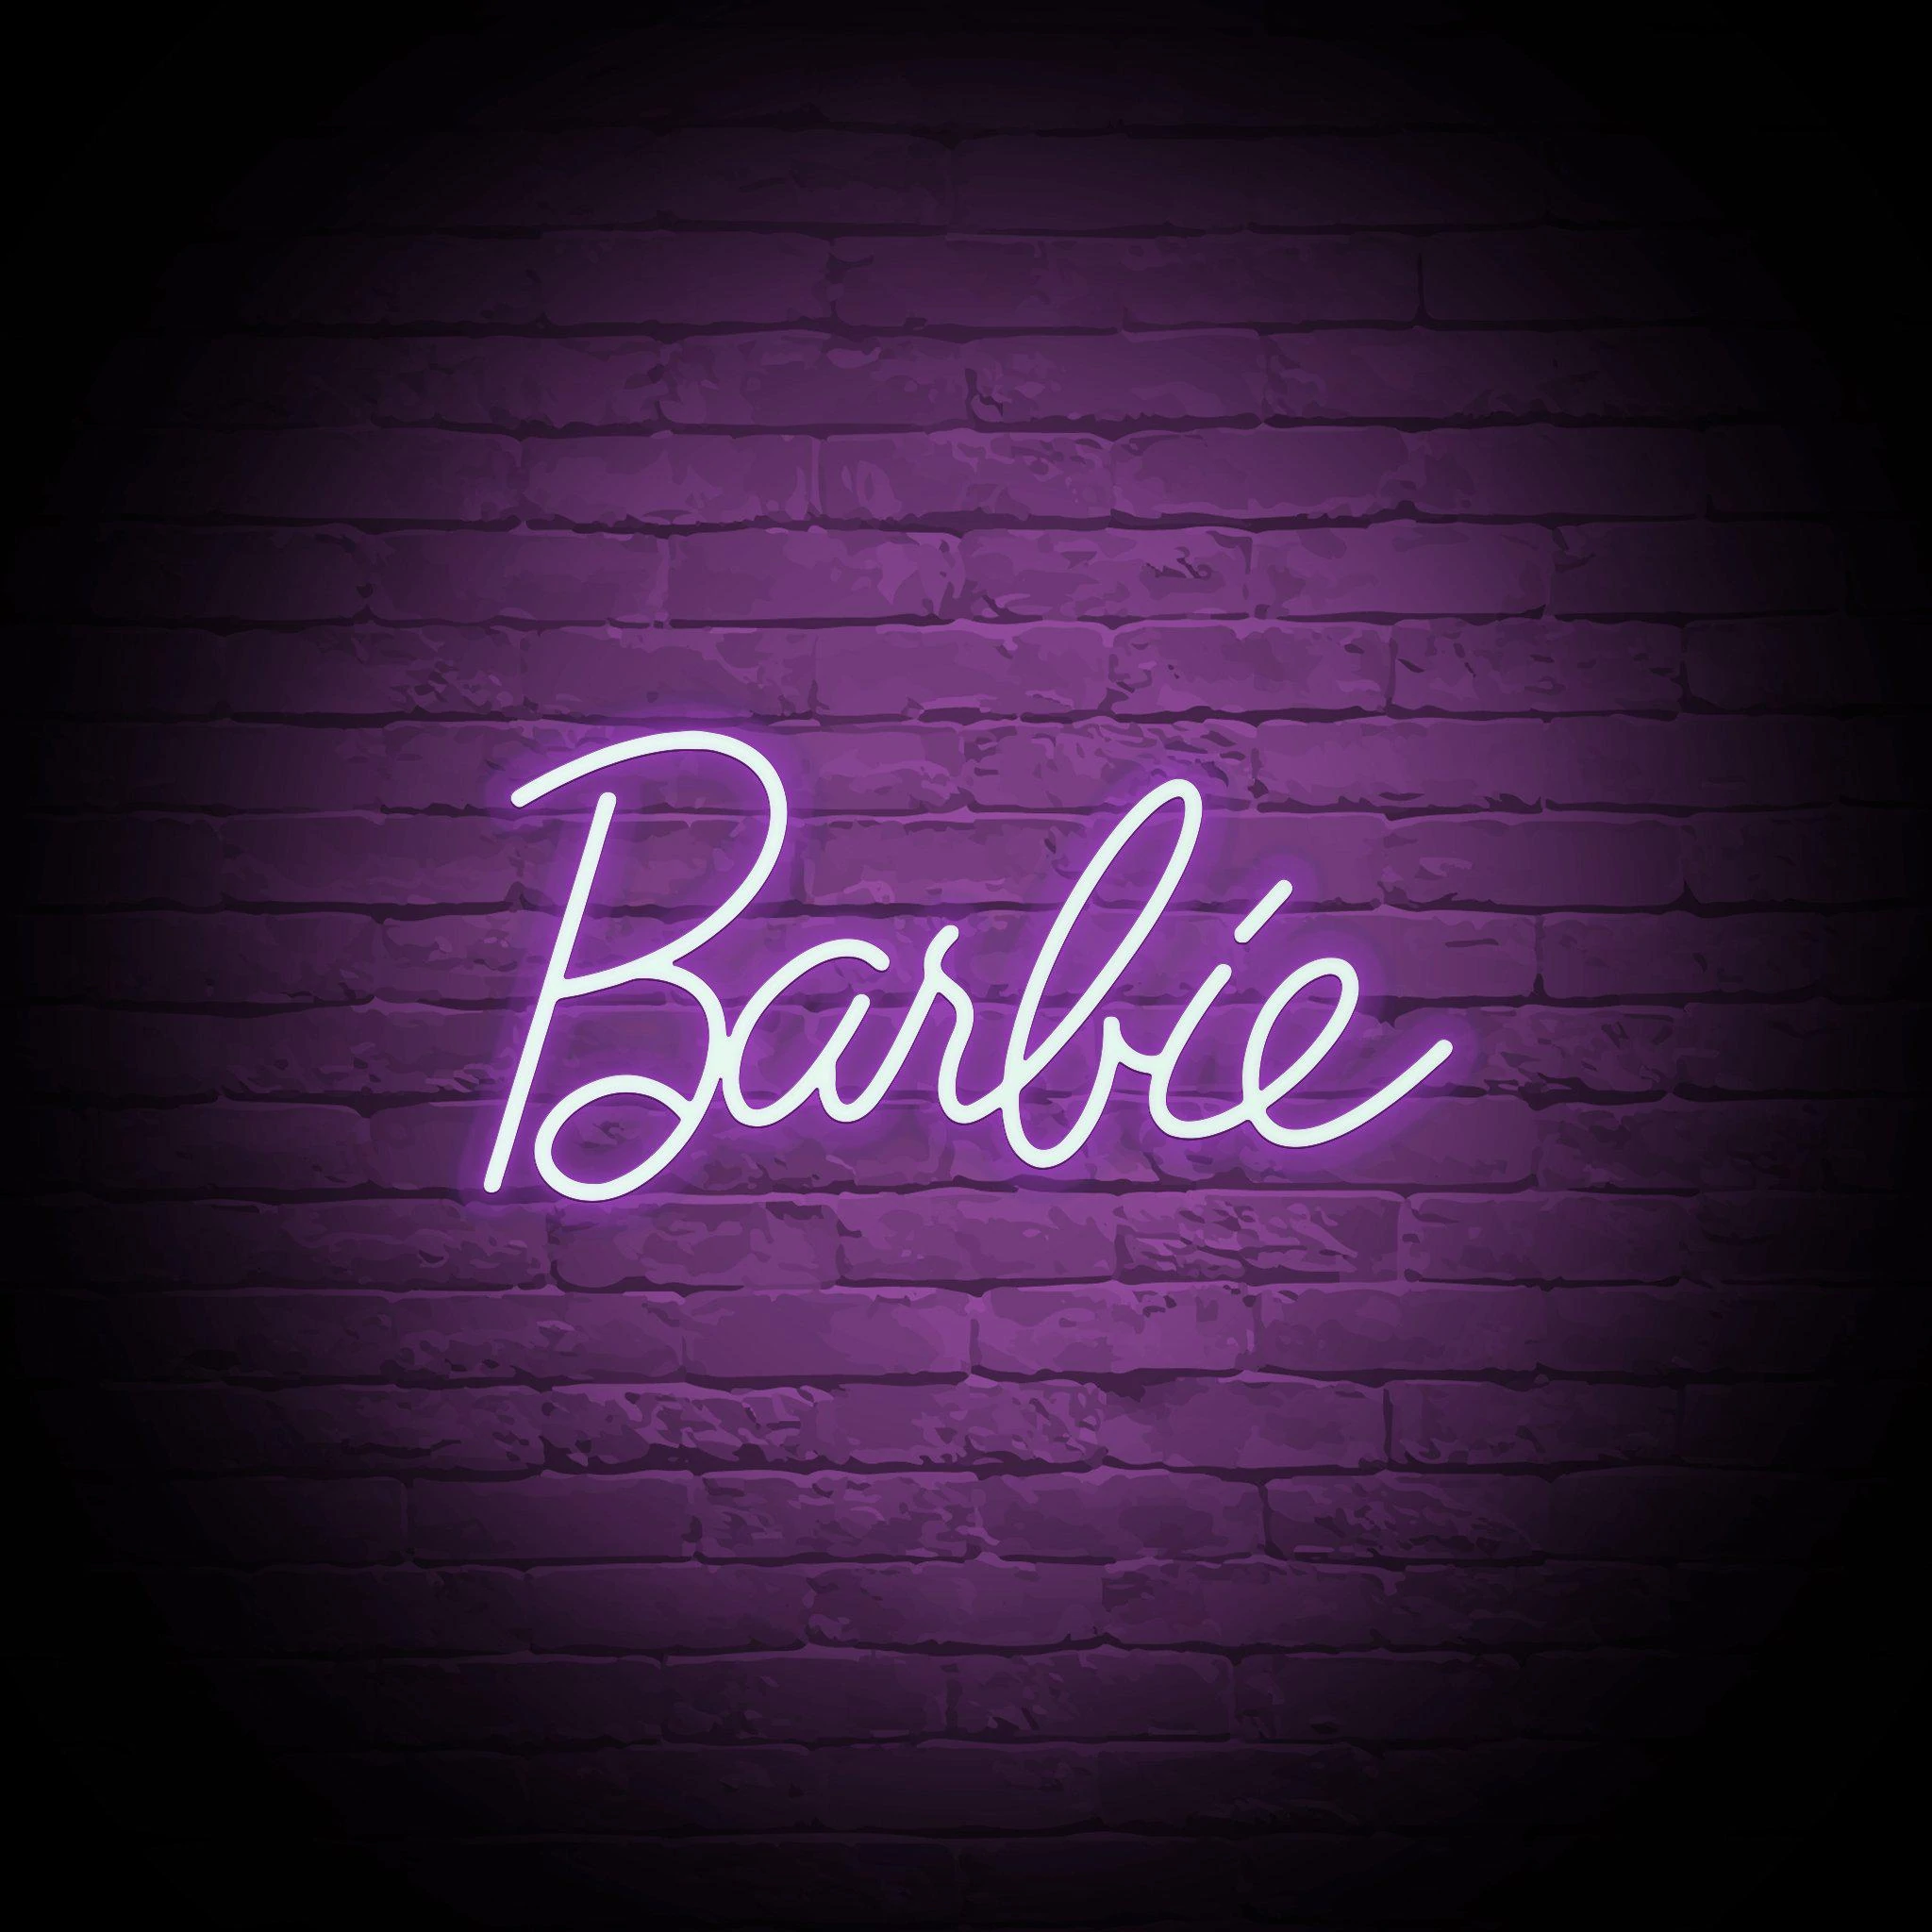 'BARBIE' NEON SIGN